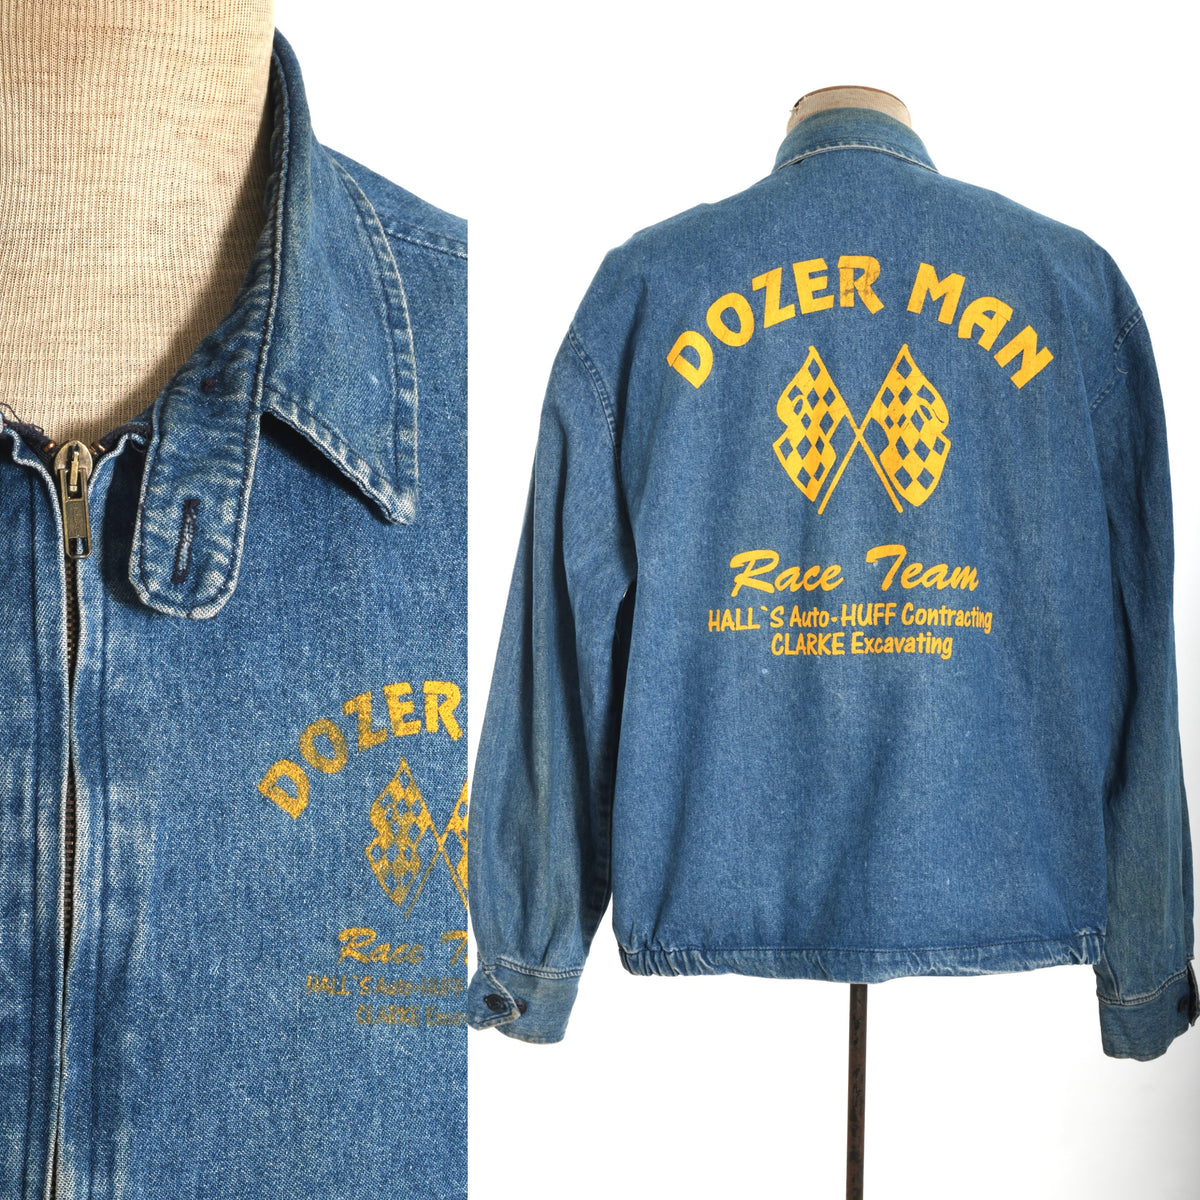 Vintage 1980s XL Blue Denim Dozer Man Racing Team Graphic Jacket